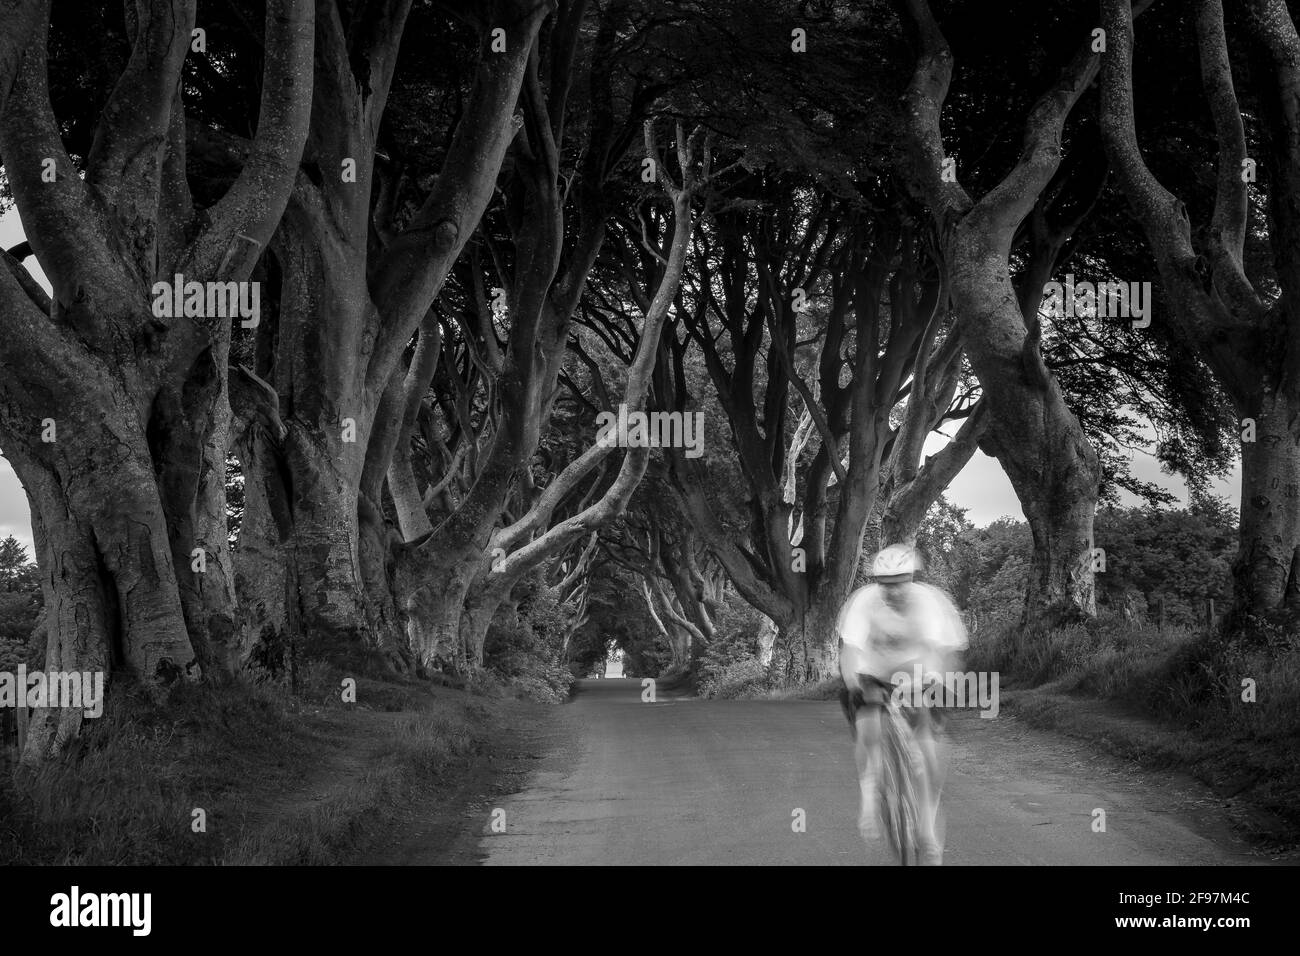 Maestosa strada fiancheggiata da alberi di faggio del XVIII secolo conosciuta come The Dark Hedges - famosa località della serie televisiva HBO Game of Thrones all'alba - vicino a Ballymoney, Irlanda del Nord e un biker sfocato di fronte Foto Stock